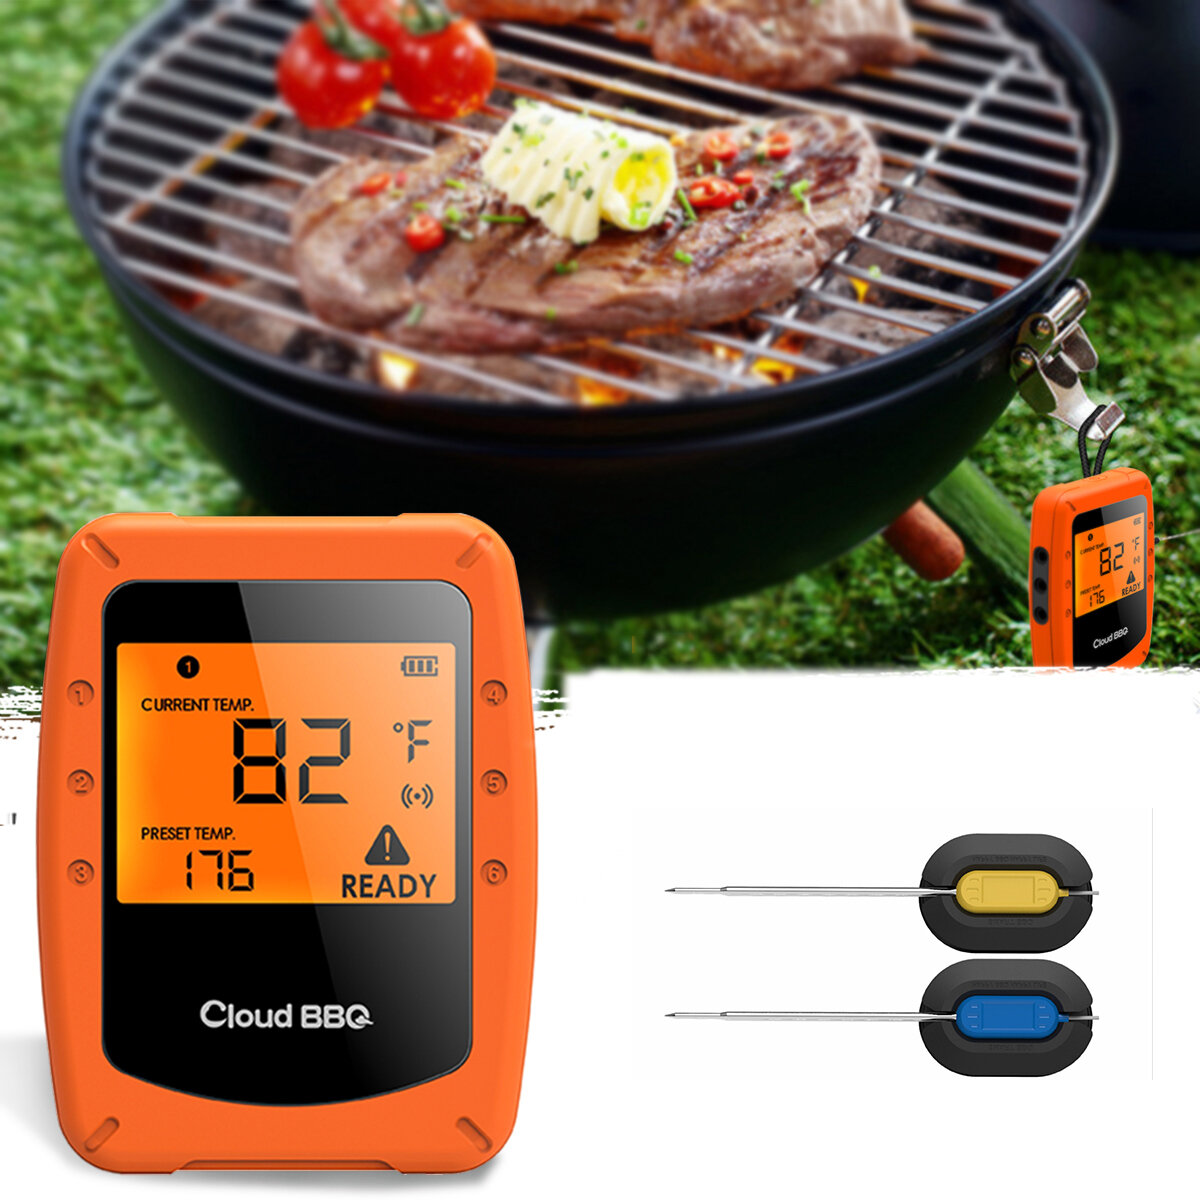 ασύρματοι έξυπνοι θερμόμετροι BBQ για φούρνο, με Bluetooth και Wifi για IOS και Android